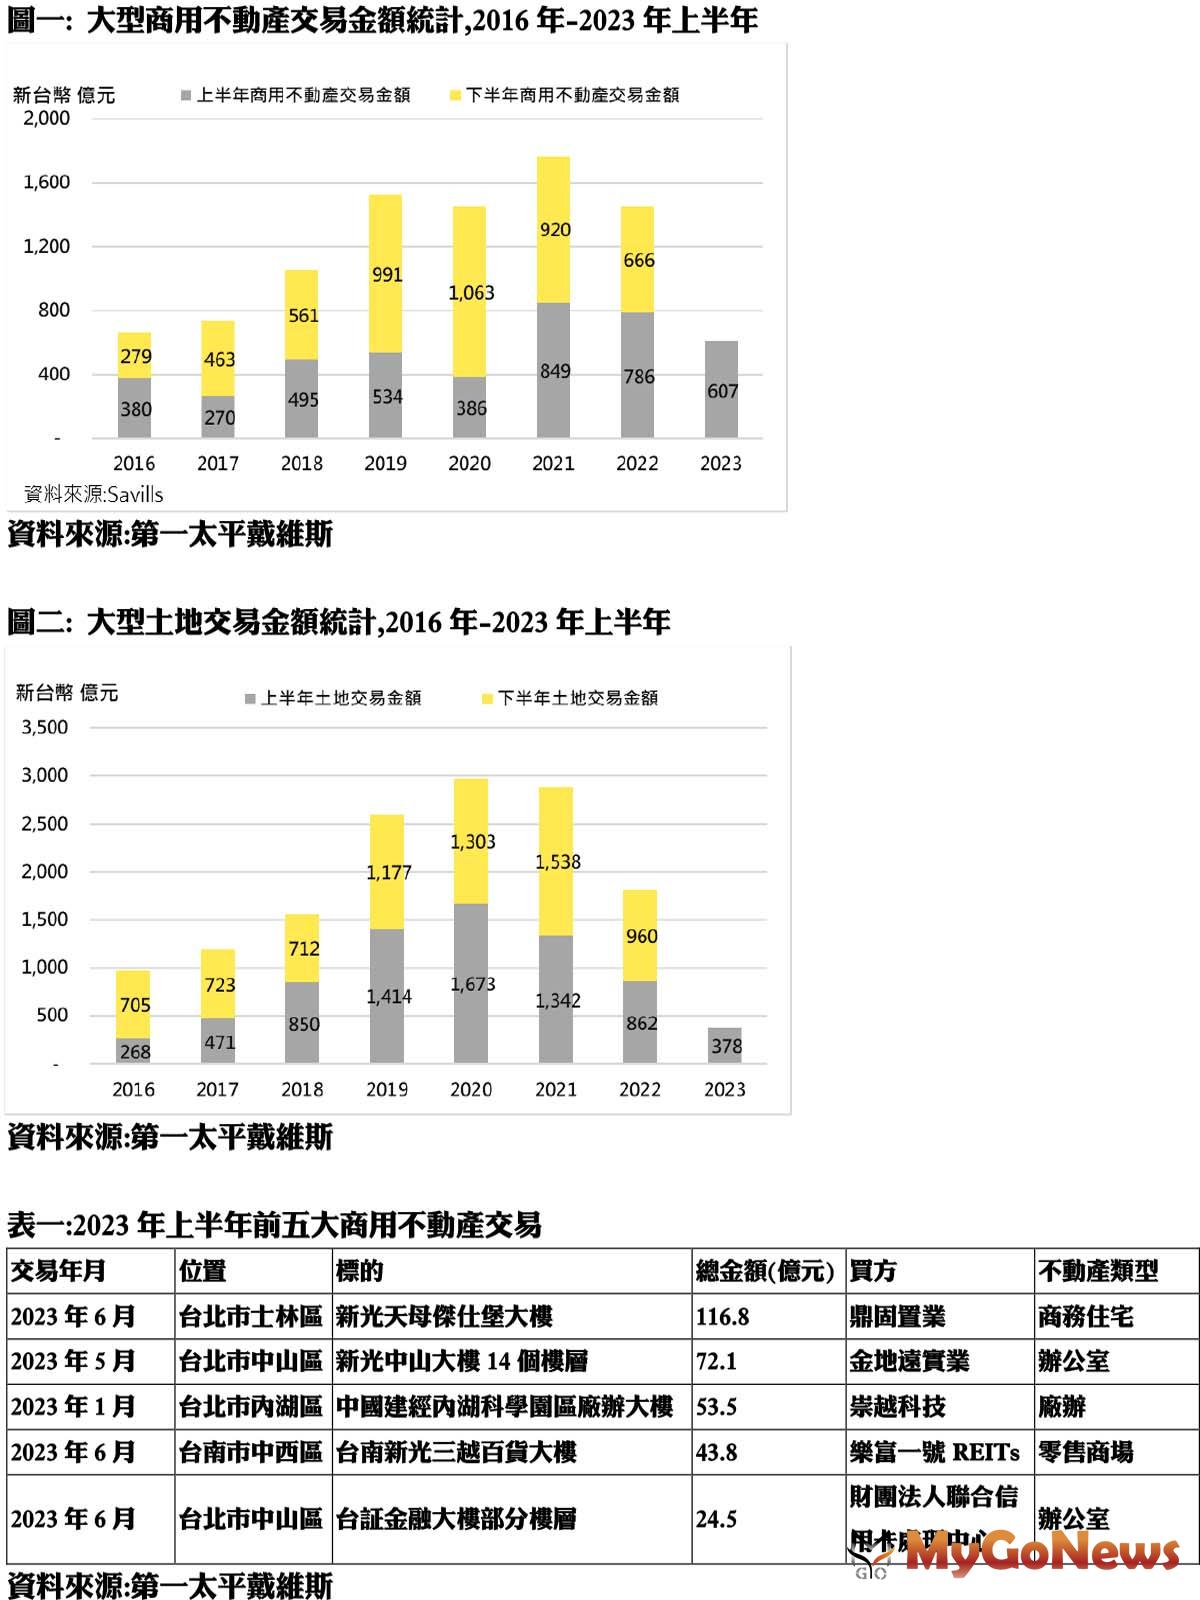 大型商用不動產交易金額統計,2016年-2023年上半年 MyGoNews房地產新聞 市場快訊